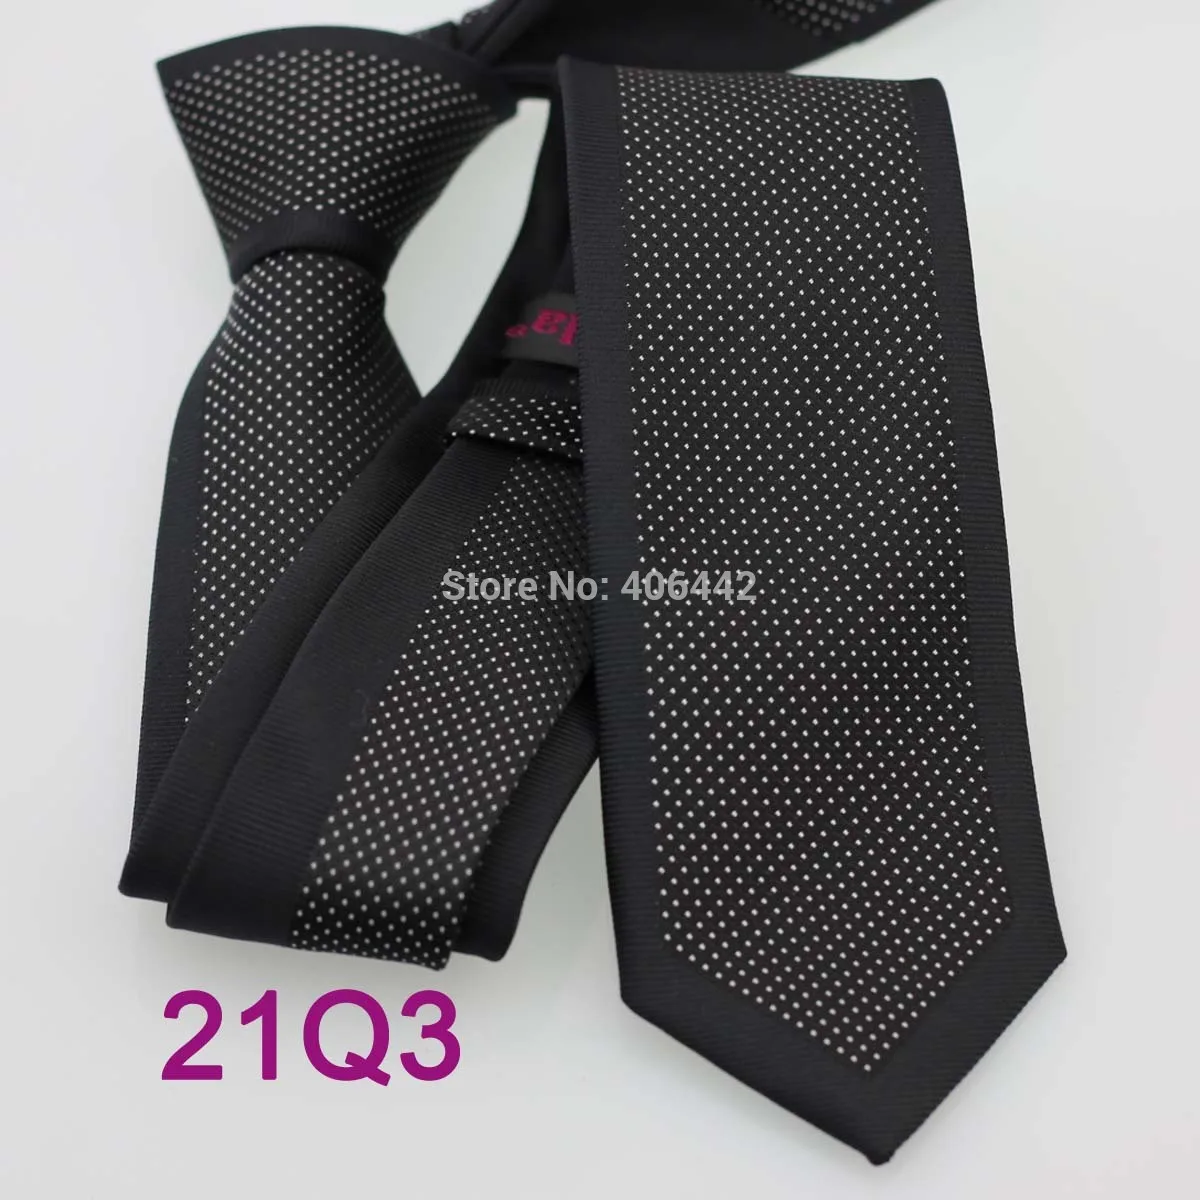 Yibei Coachella Галстуки мужские узкий галстук Дизайн пограничной черные с белыми пятнами в горошек микрофибры галстук мода Slim Tie